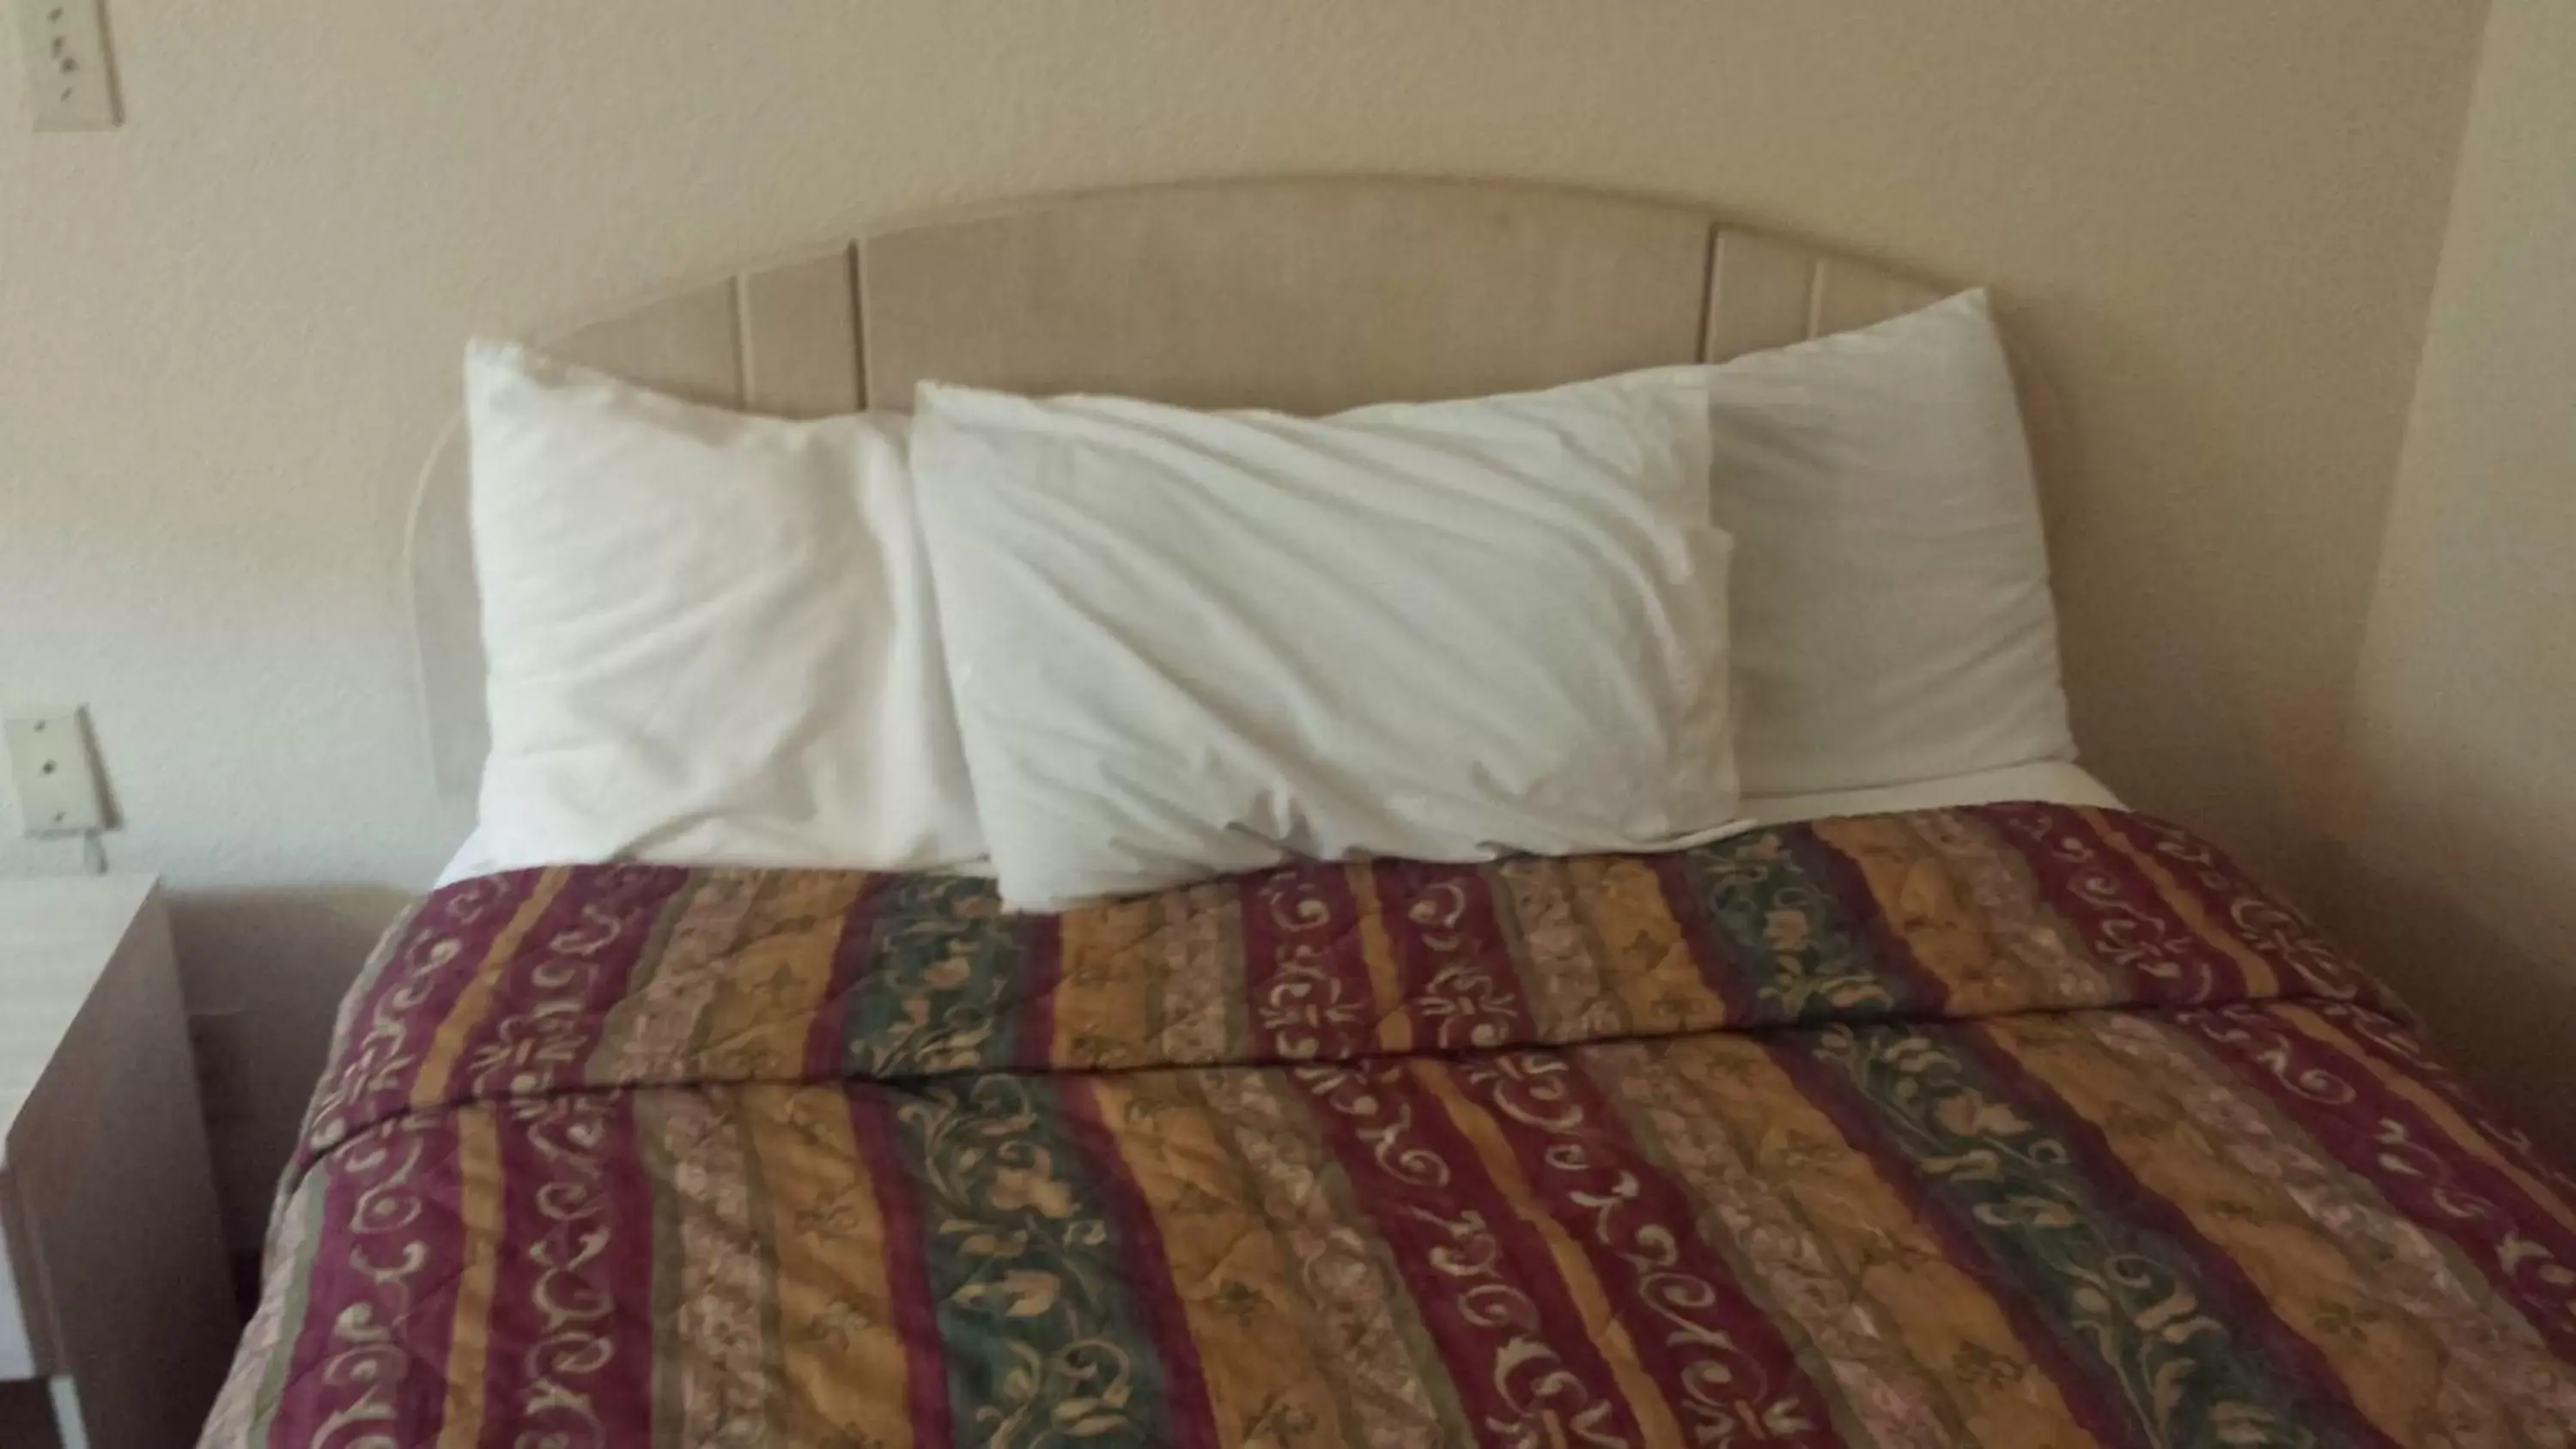 Bed in Americas Stay Inn-Leavenworth